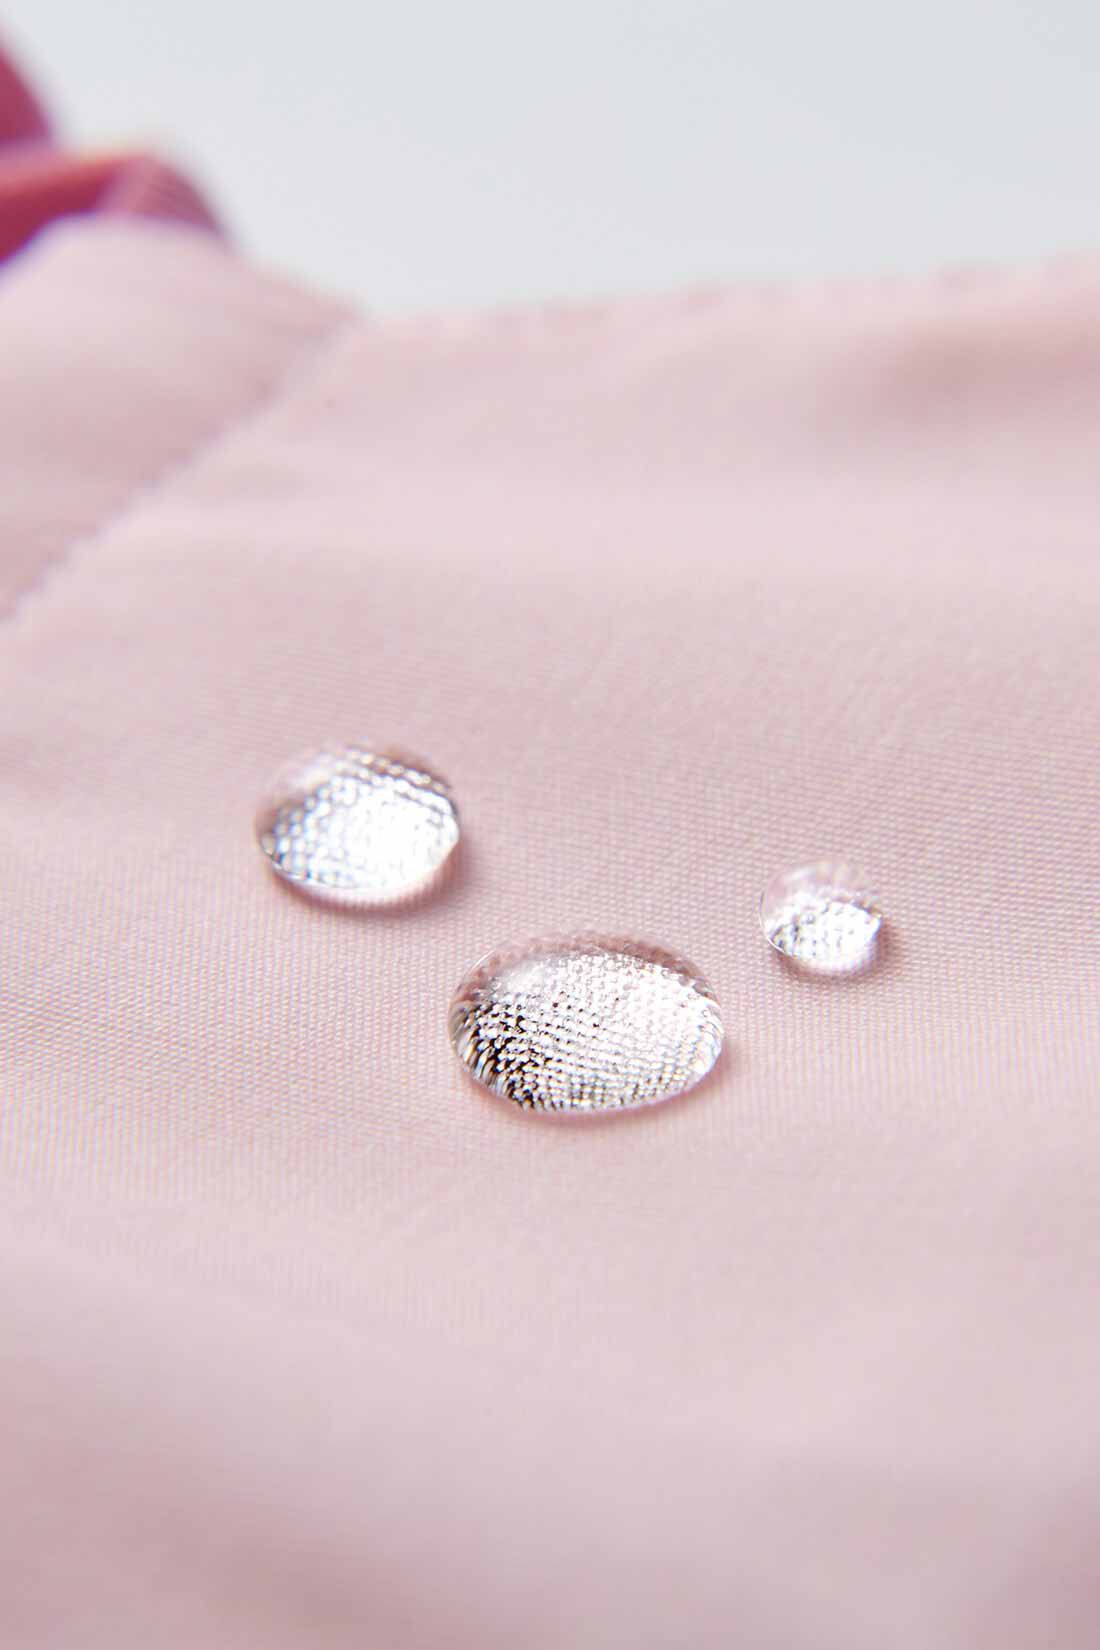 OSYAIRO|OSYAIRO　UVカットのキレイカラーマスク〈ピンク〉|表裏ともに水をはじき汚れも付きにくい撥水加工。